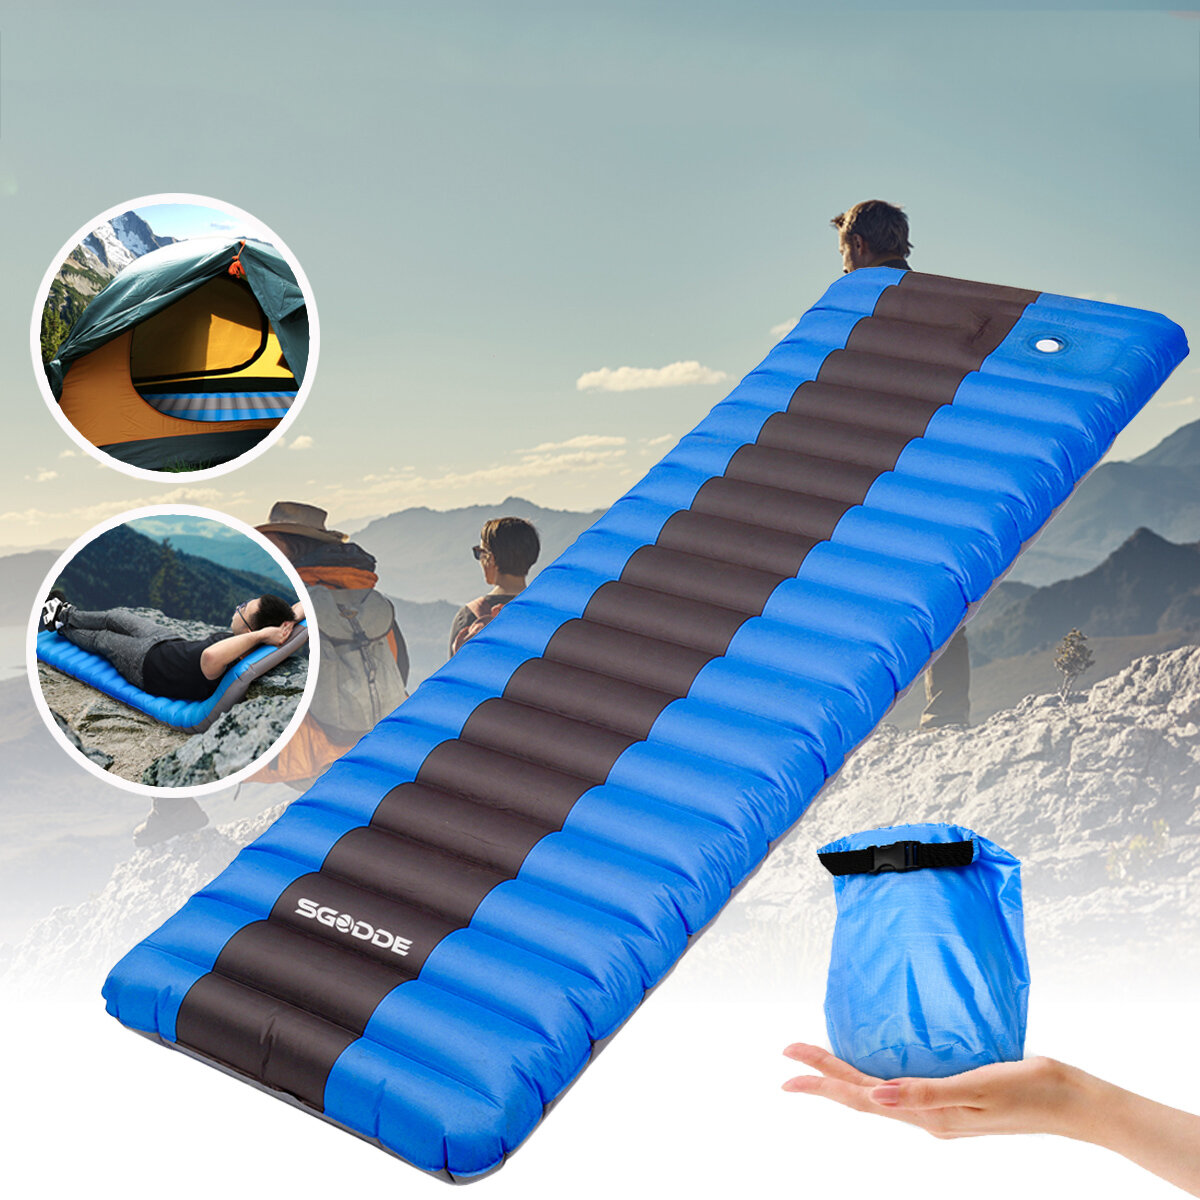 SGODDE Tappetino gonfiabile impermeabile ultraleggero campeggio Materasso Cuscino per dormire Cuscino d'aria per esterno campeggio Escursionismo Picnic